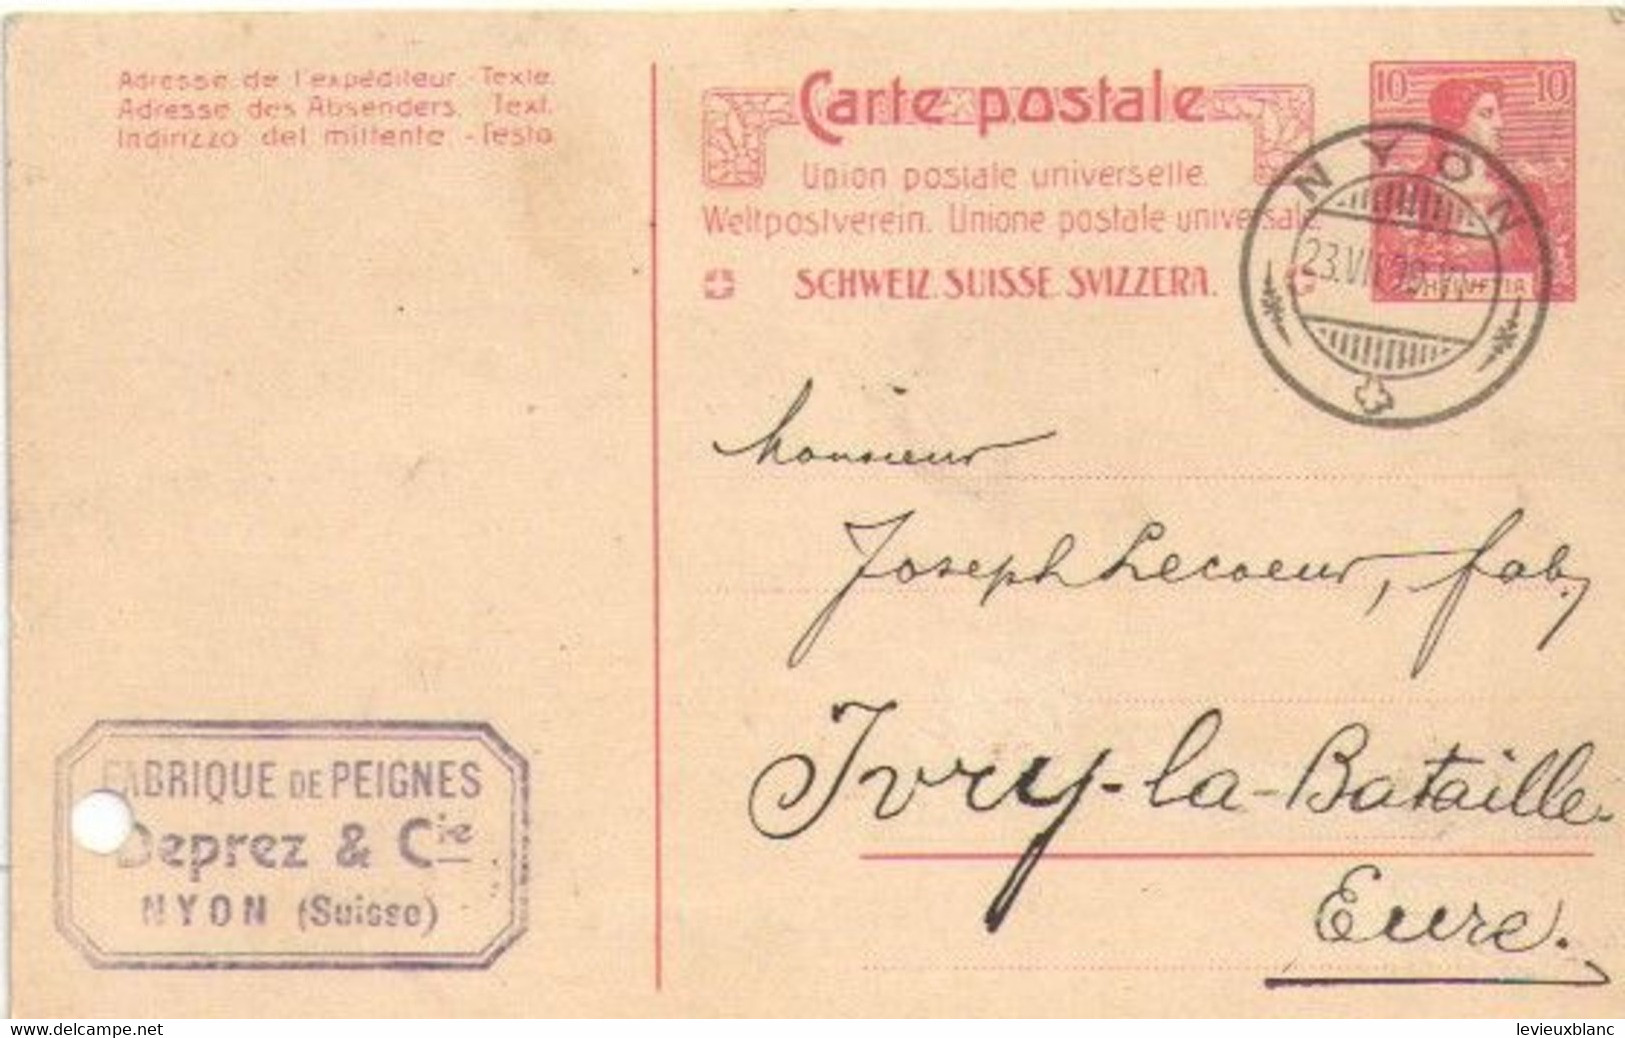 Fabrication De Peignes En Ivoire/Joseph LECOEUR/Ivry La Bataille/Commande/DEPREZ & Cie / NYON /SUISSE/1909     FACT495 - Suisse